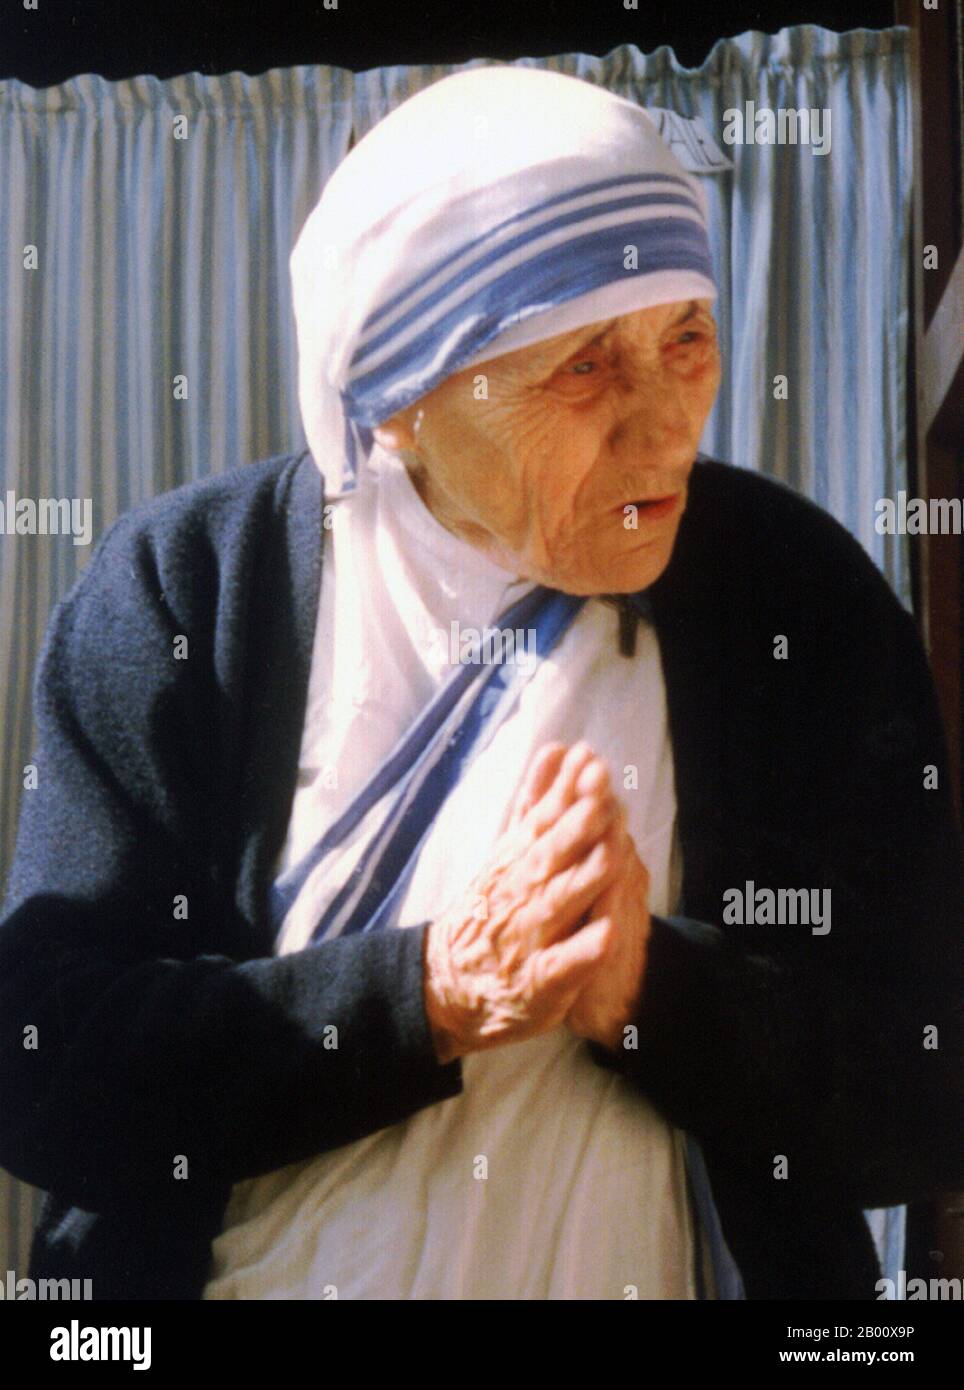 Albanien/Indien: Mutter Teresa von Kalkutta (1910-1997). Foto von Evert Odekerken (CC BY 2.5 License), 1988. Mutter Teresa (26. August 1910 – 5. September 1997), geborene Agnes Gonxha Bojaxhiu, war eine katholische Nonne der albanischen Volkszugehörigkeit und der indischen Staatsbürgerschaft, die 1950 die Missionare der Nächstenliebe in Kalkutta, Indien, gründete. Über 45 Jahre lang diente sie den Armen, Kranken, Waisen und Sterbenden, während sie die Expansion der Missionare der Nächstenliebe leitete, zuerst in Indien und dann weltweit. Nach ihrem Tod wurde sie von Papst Johannes Paul II. Selig gesprochen und erhielt den Titel Selige Teresa von Kalkutta. Stockfoto